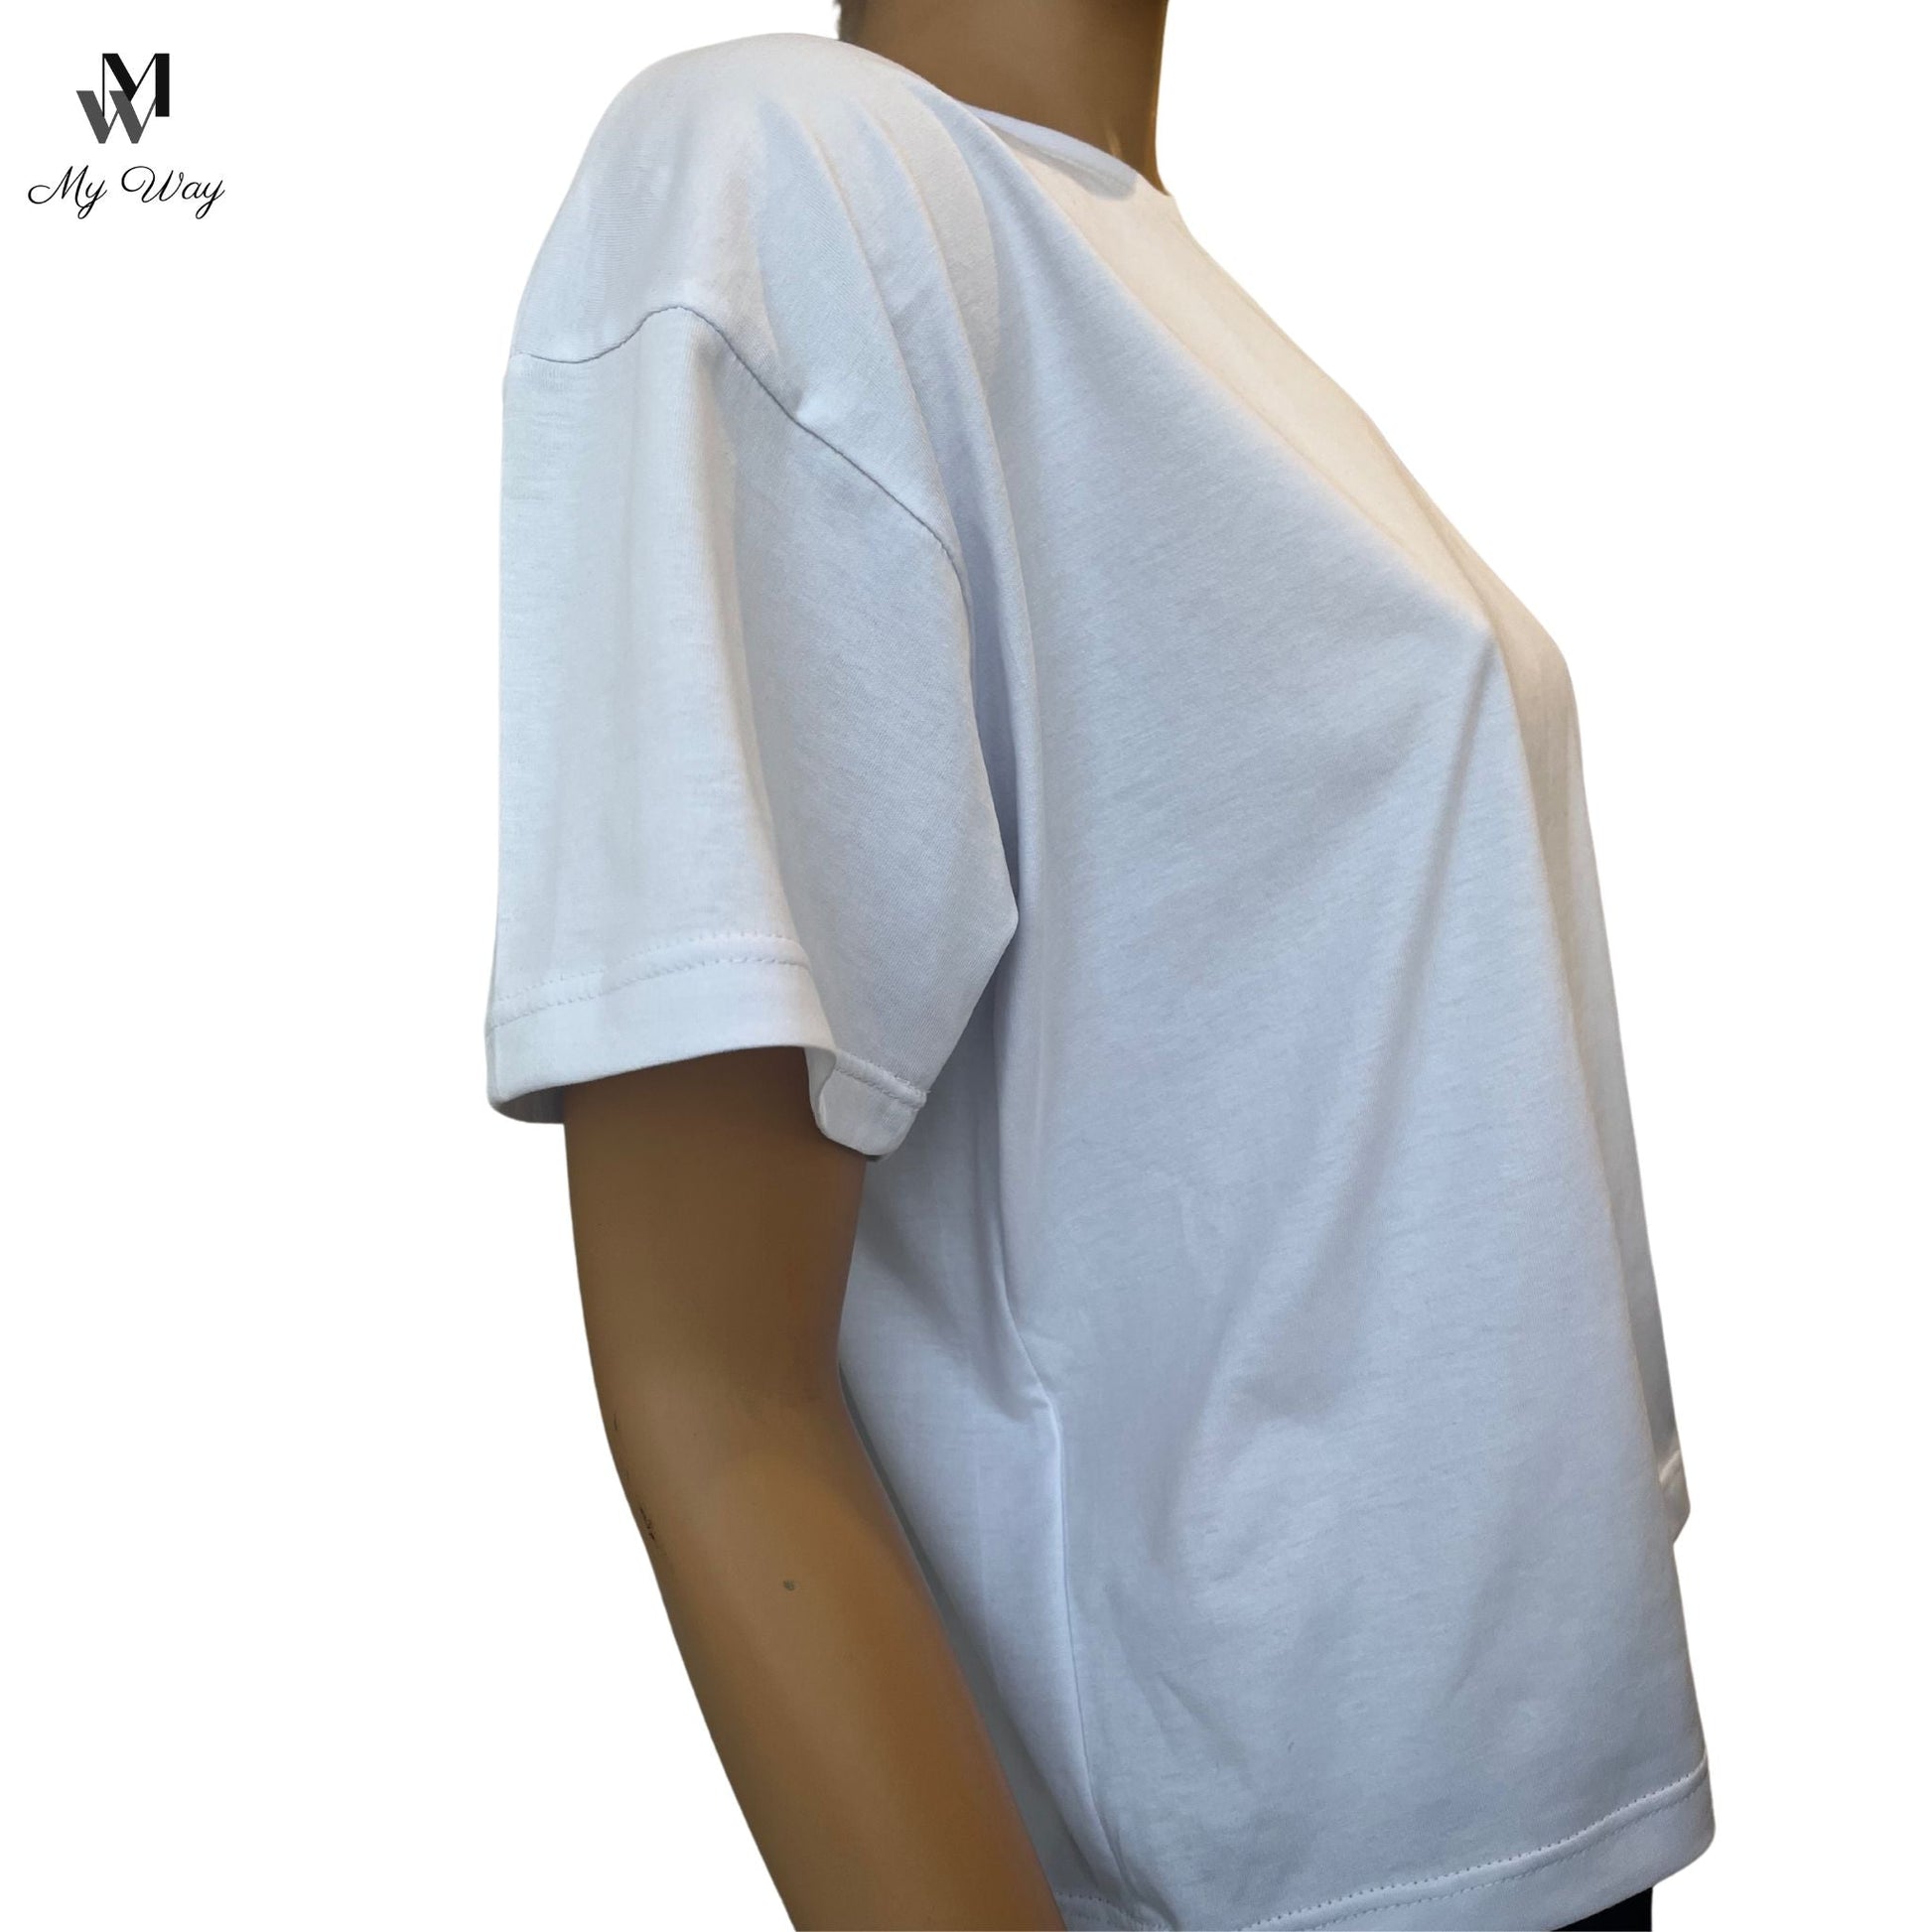 Handgefertigtes weißes Kurzarm-T-Shirt aus reiner Baumwolle für Damen